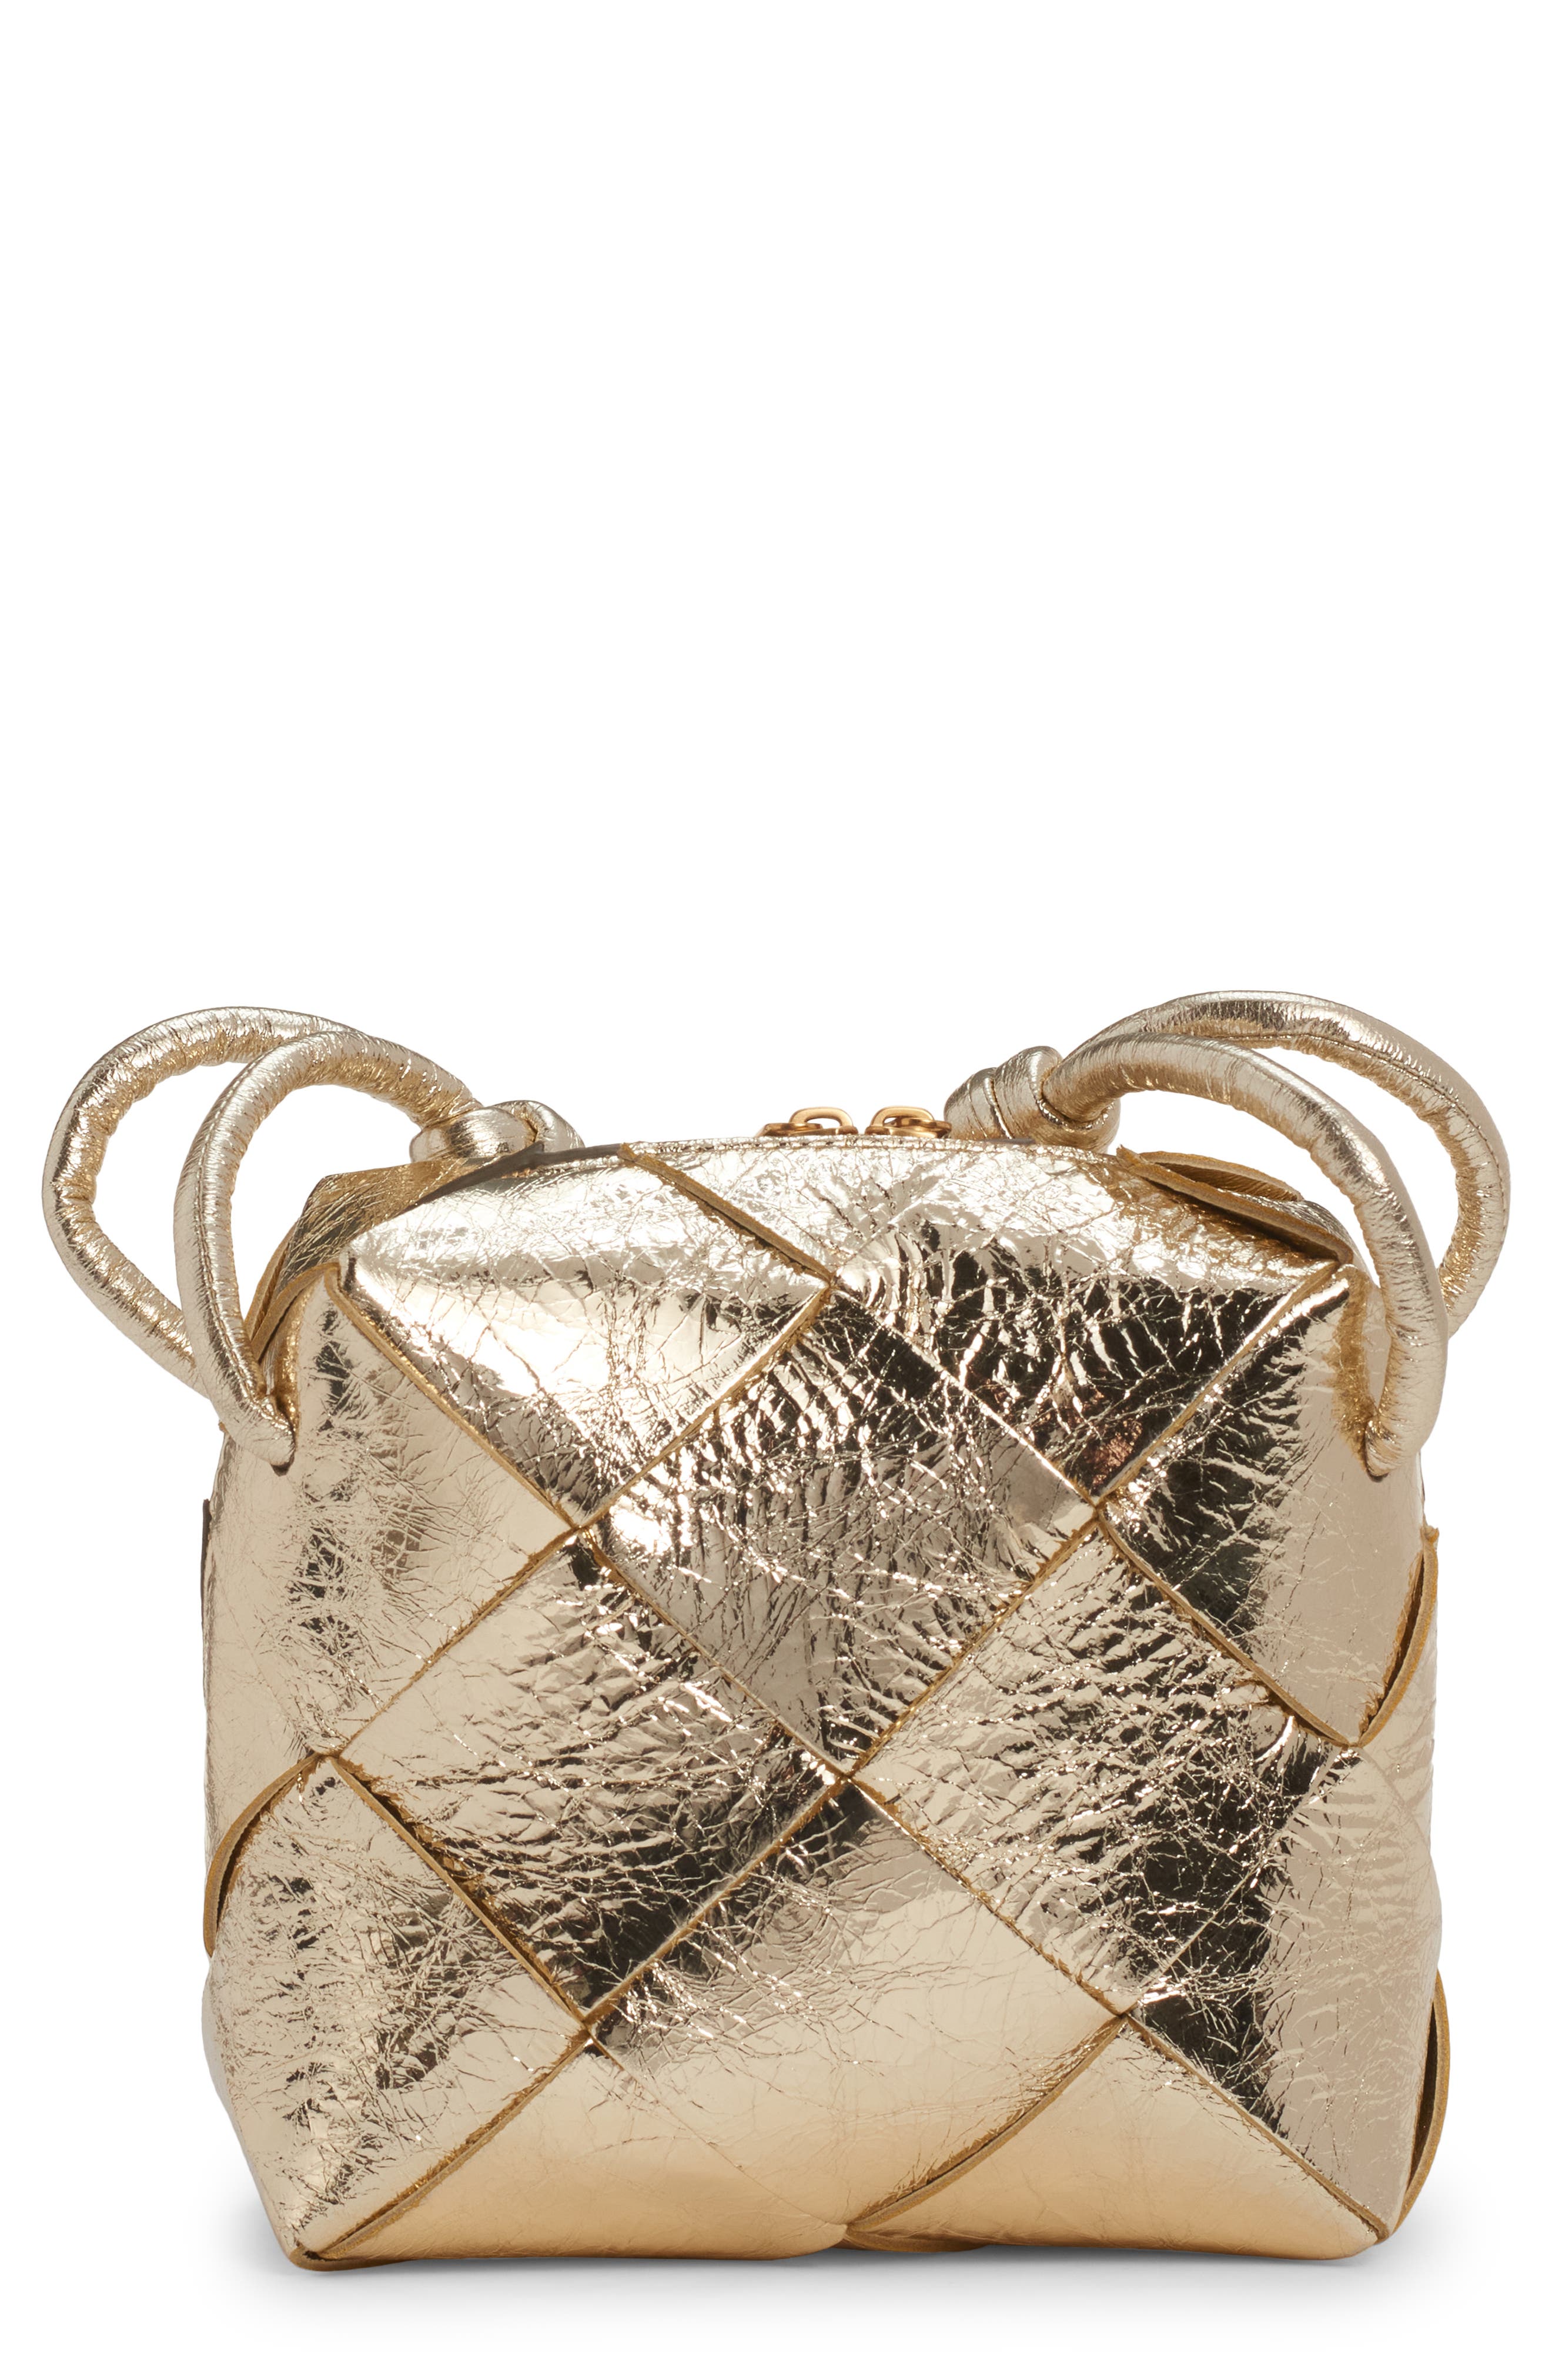 Bottega Veneta Small Clicker Shoulder Bag